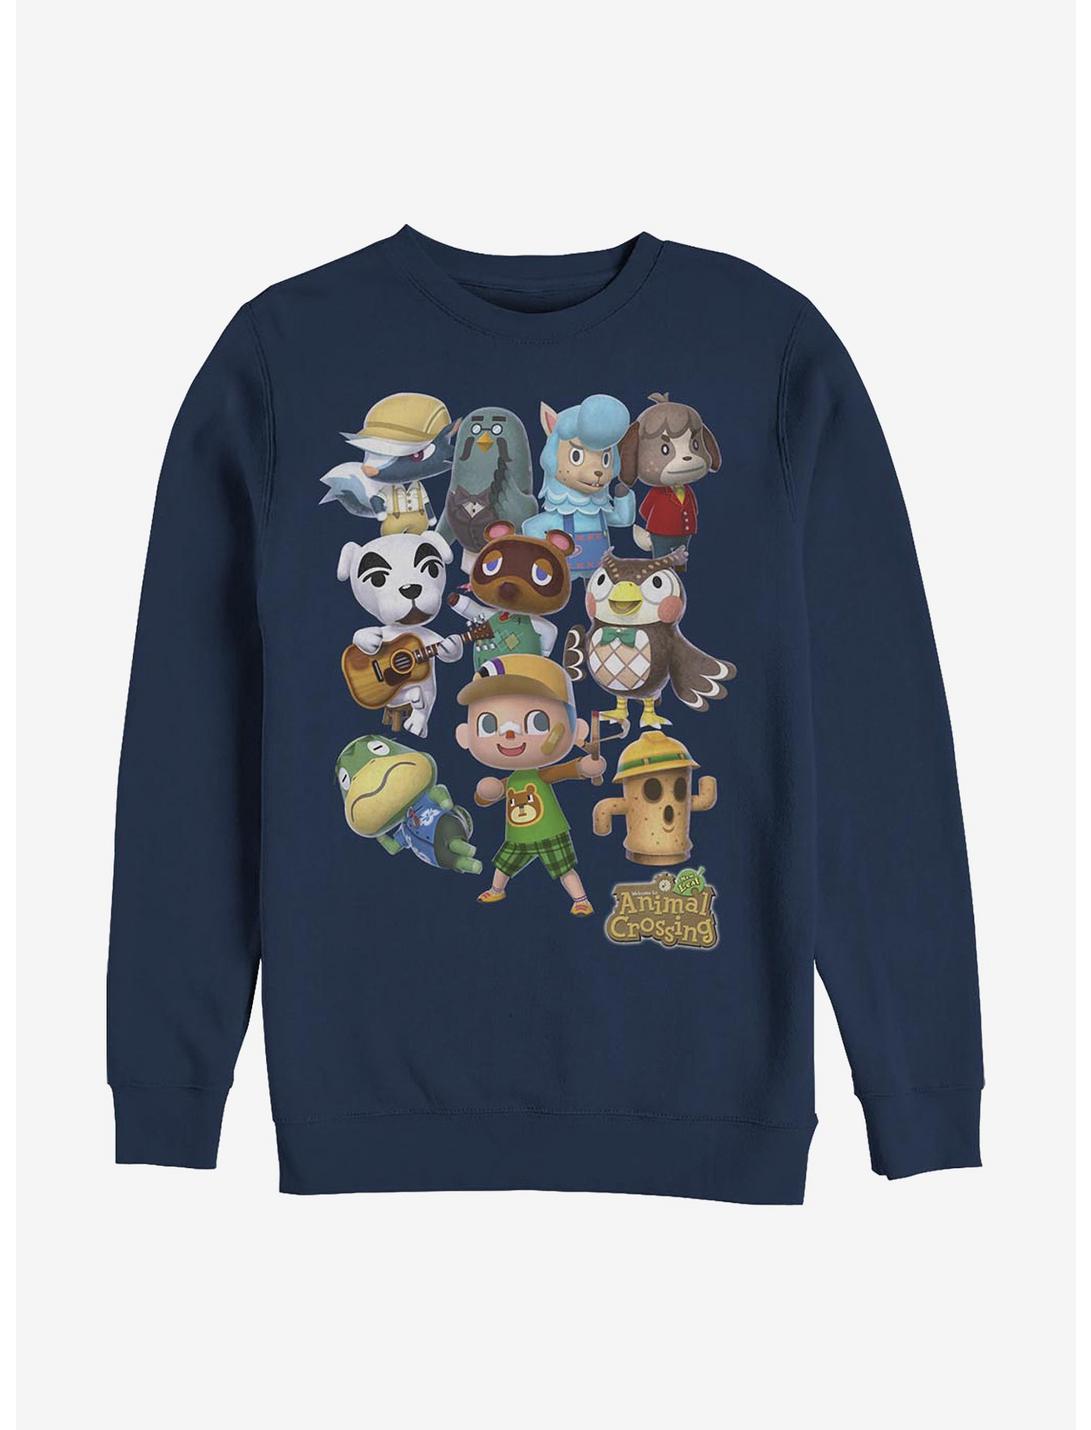 Nintendo Animal Crossing Welcome Crew Sweatshirt, NAVY, hi-res